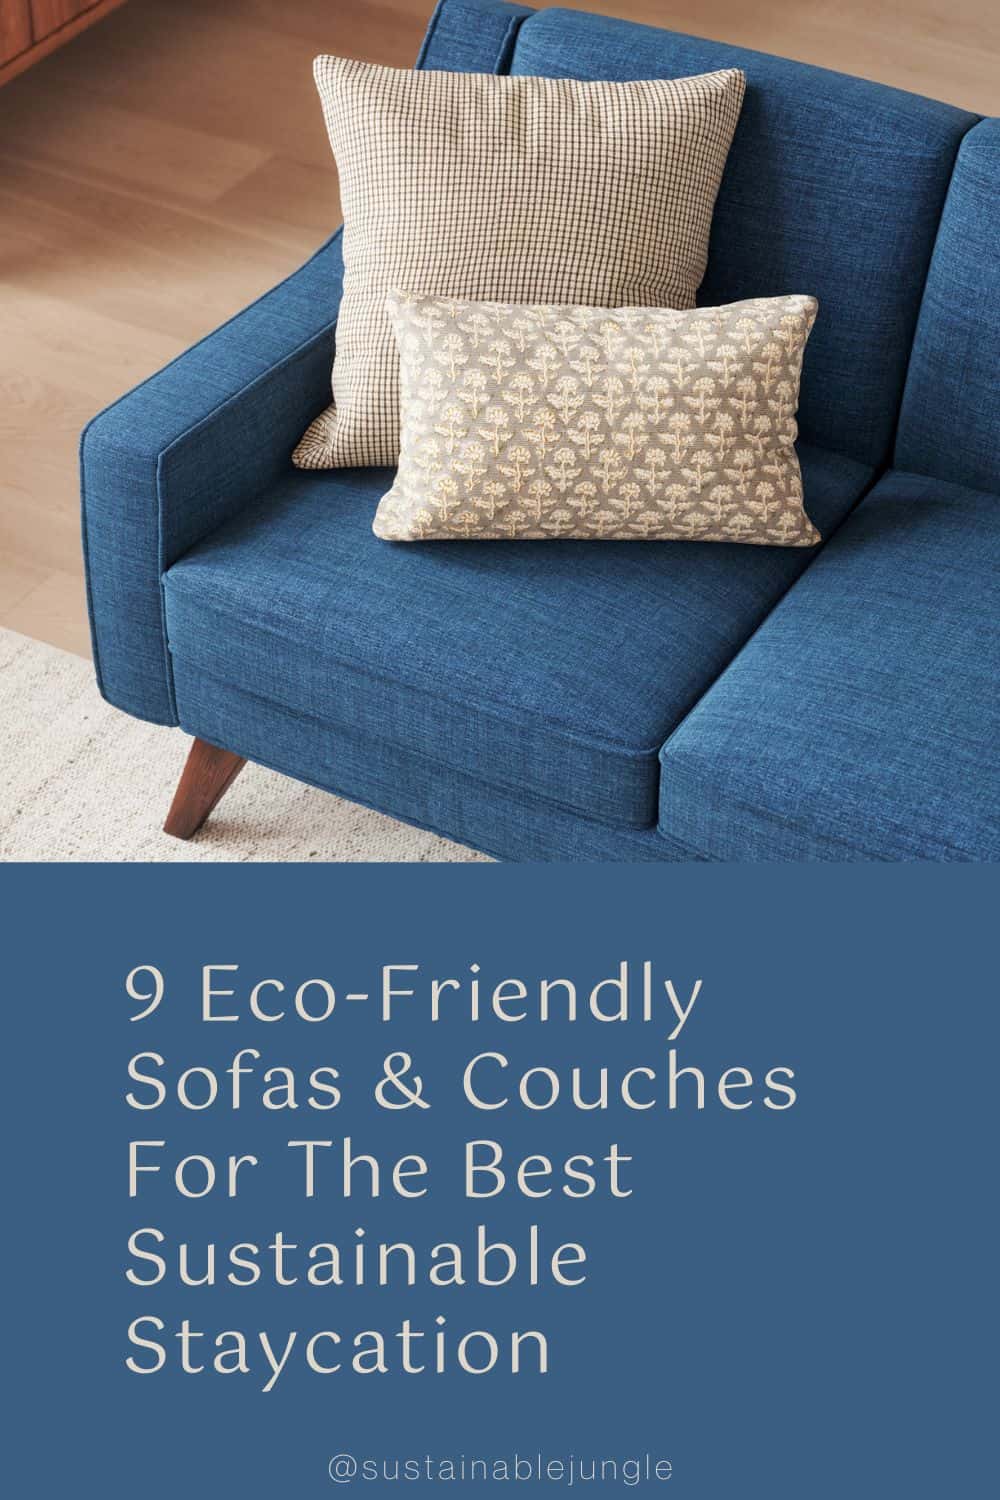 9个环保沙发和沙发，最佳可持续的居家度假形象，作者:Medley #生态友好沙发#生态友好沙发#生态友好沙发#生态友好分区沙发#可持续的沙发#可持续的森林